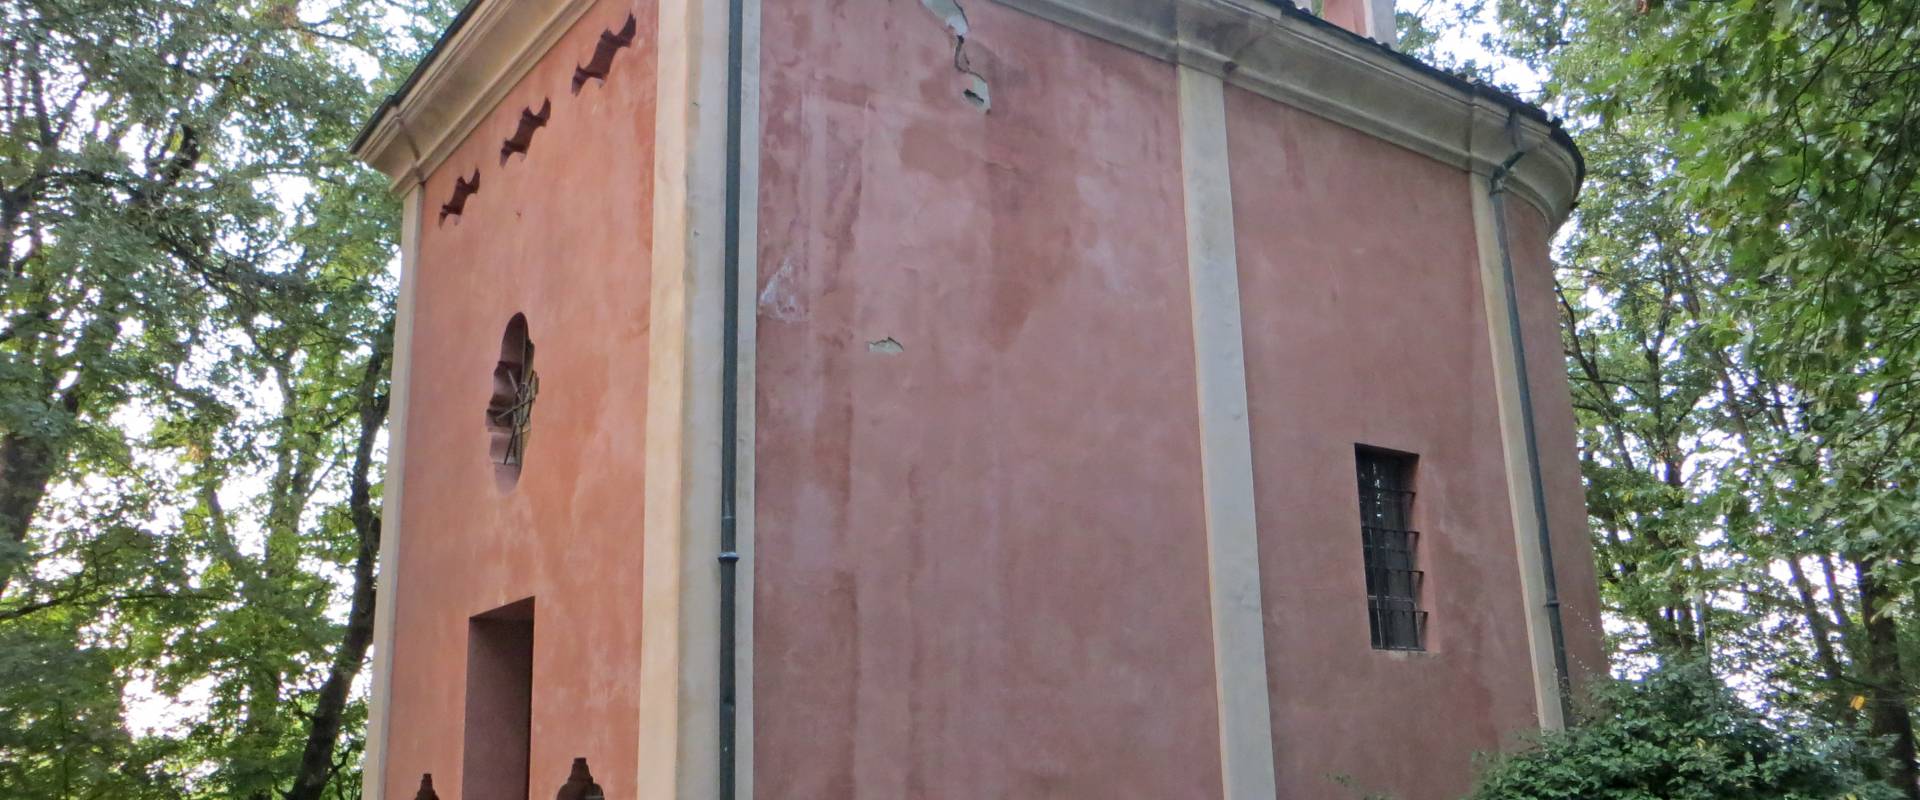 Oratorio della Beata Vergine (Castellaro, Sala Baganza) - facciata e lato est 2 2019-09-16 foto di Parma198